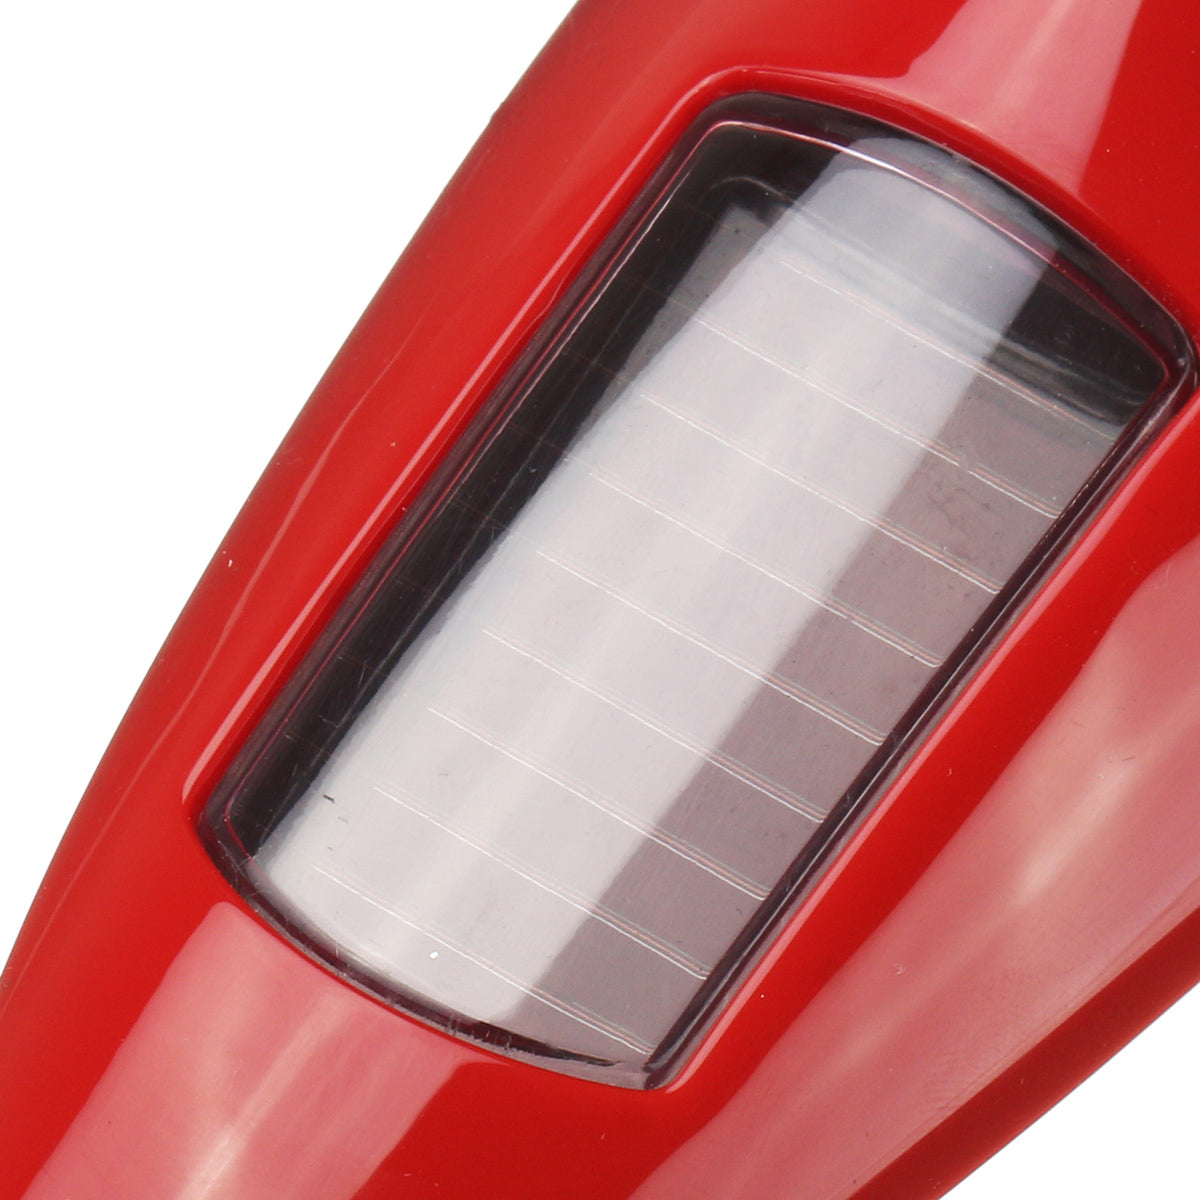 Light Gray Universal 12LED 11 Mode Solar Power Car Roof Antenna Lamp Flashing Warning Light 12V Red/Black/Silver/White